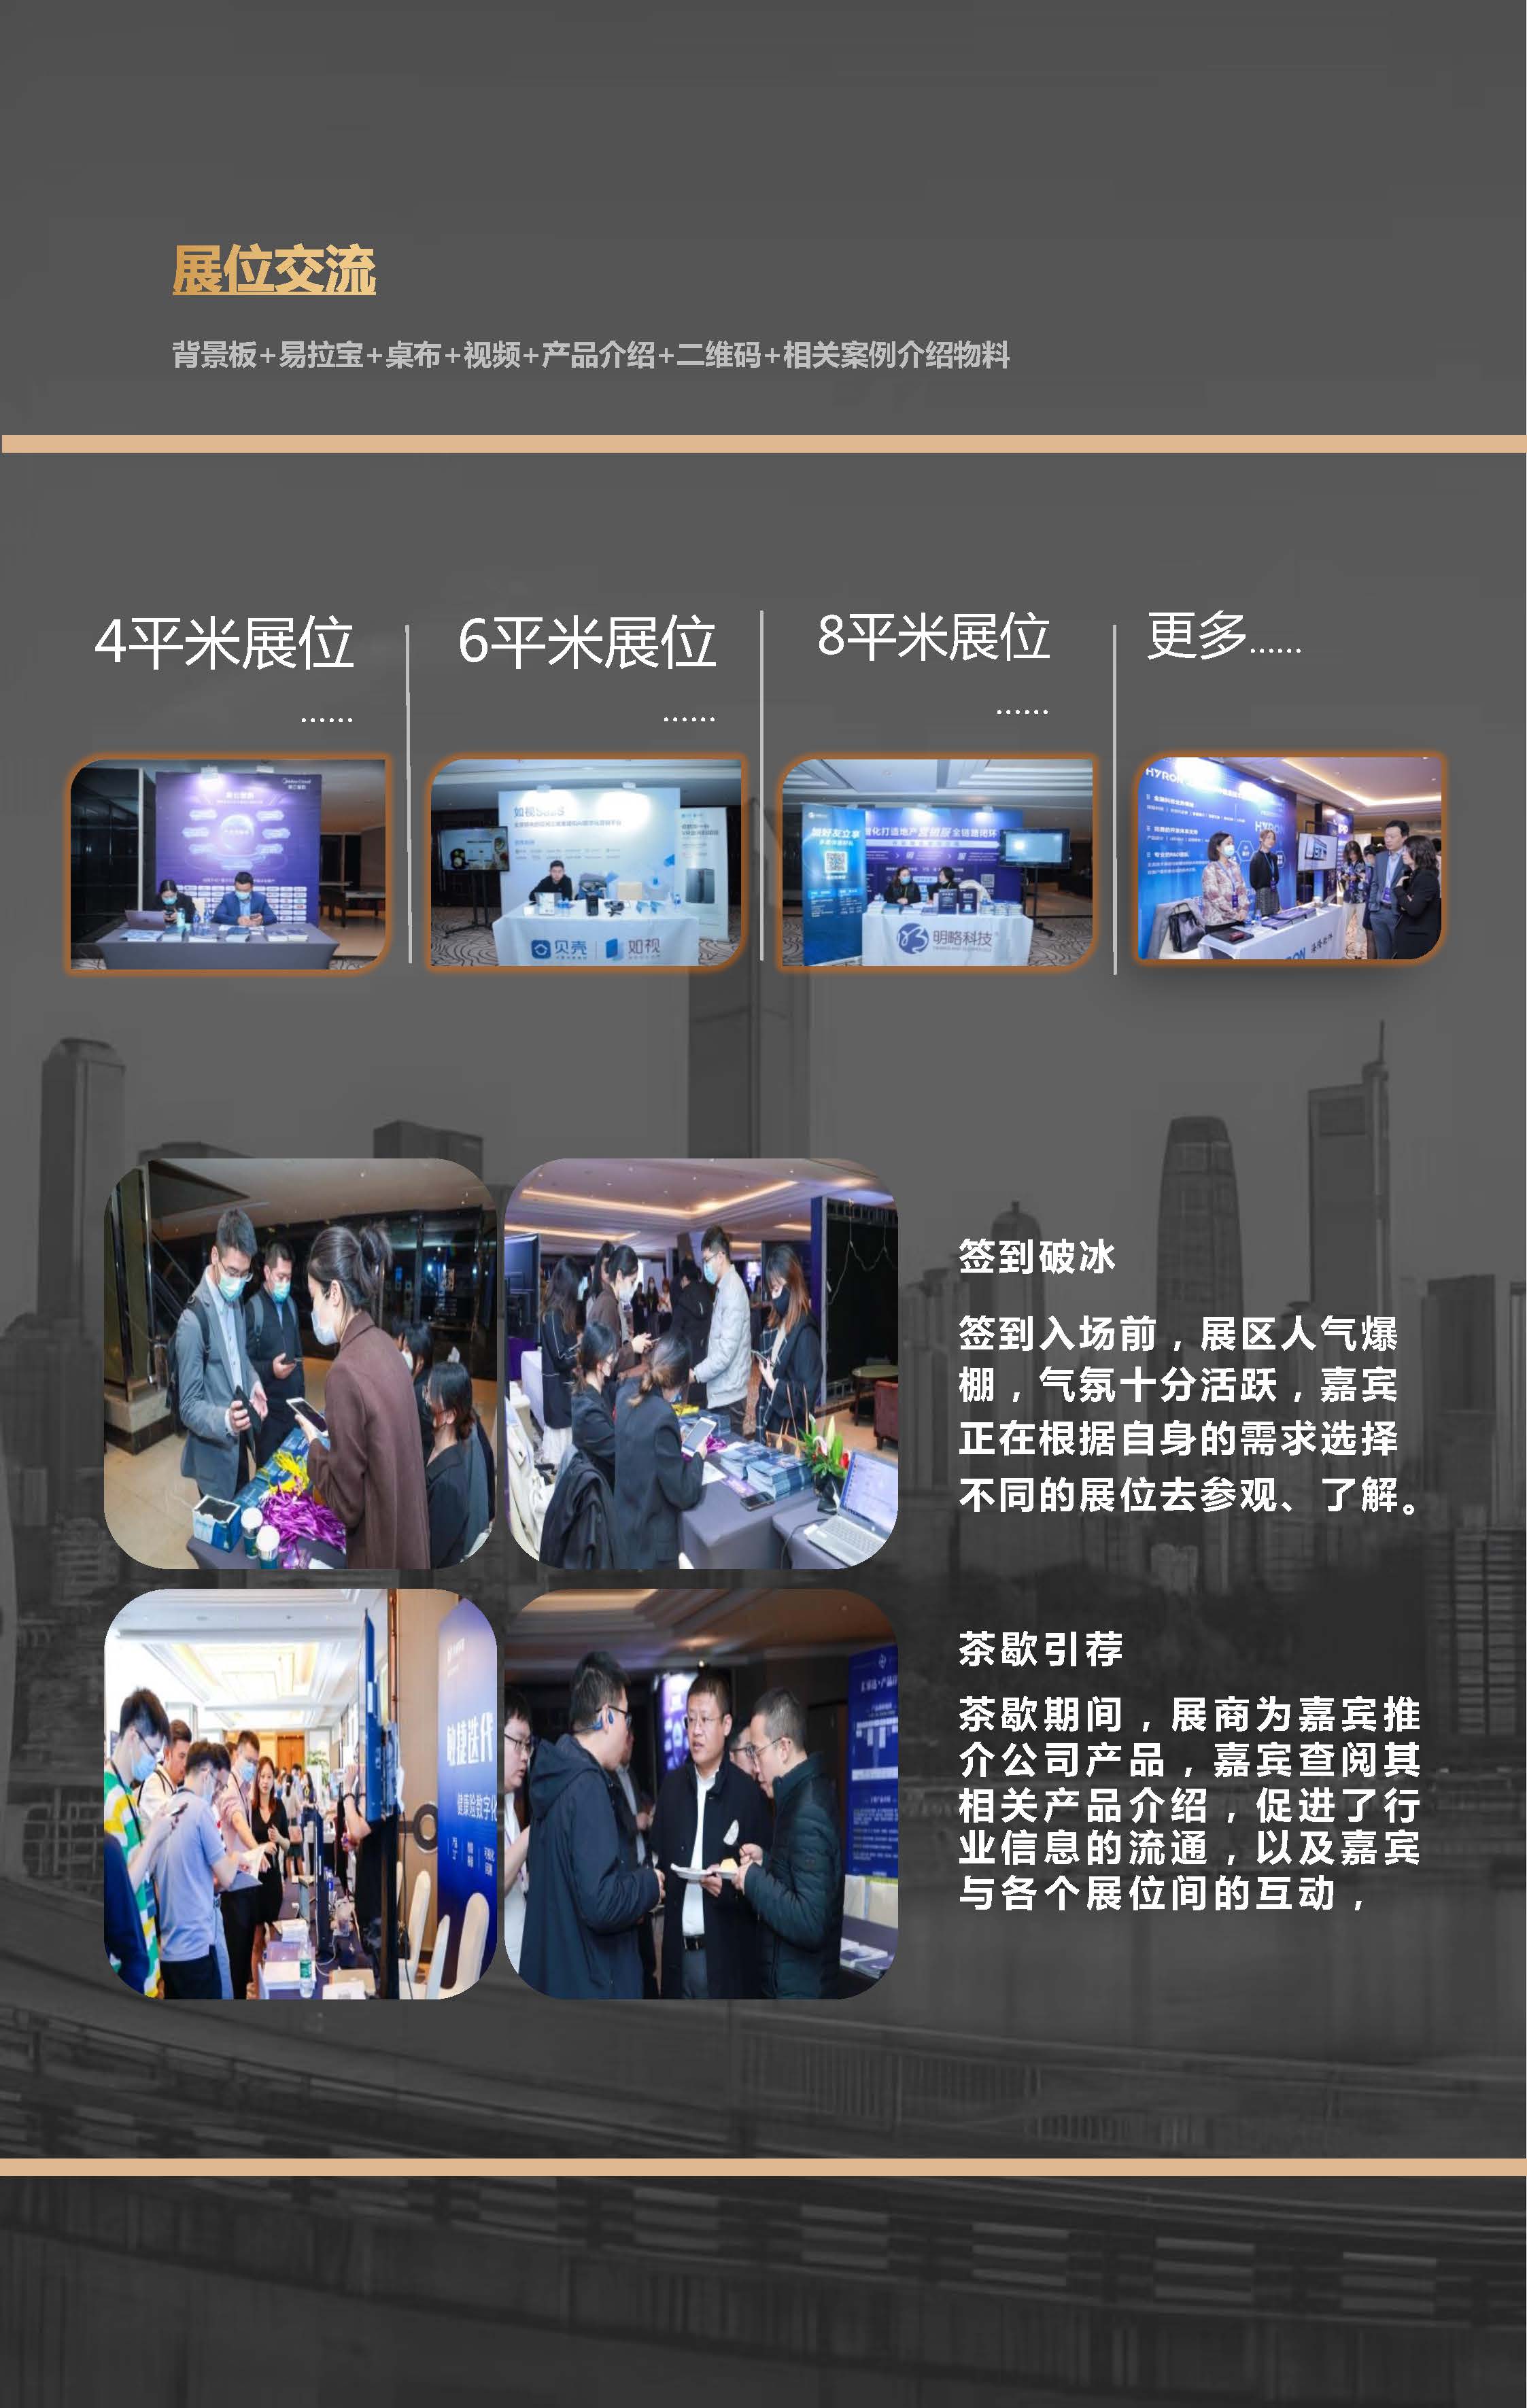 第五届SmartProp智慧商业地产物业峰会(1)_页面_11.jpg